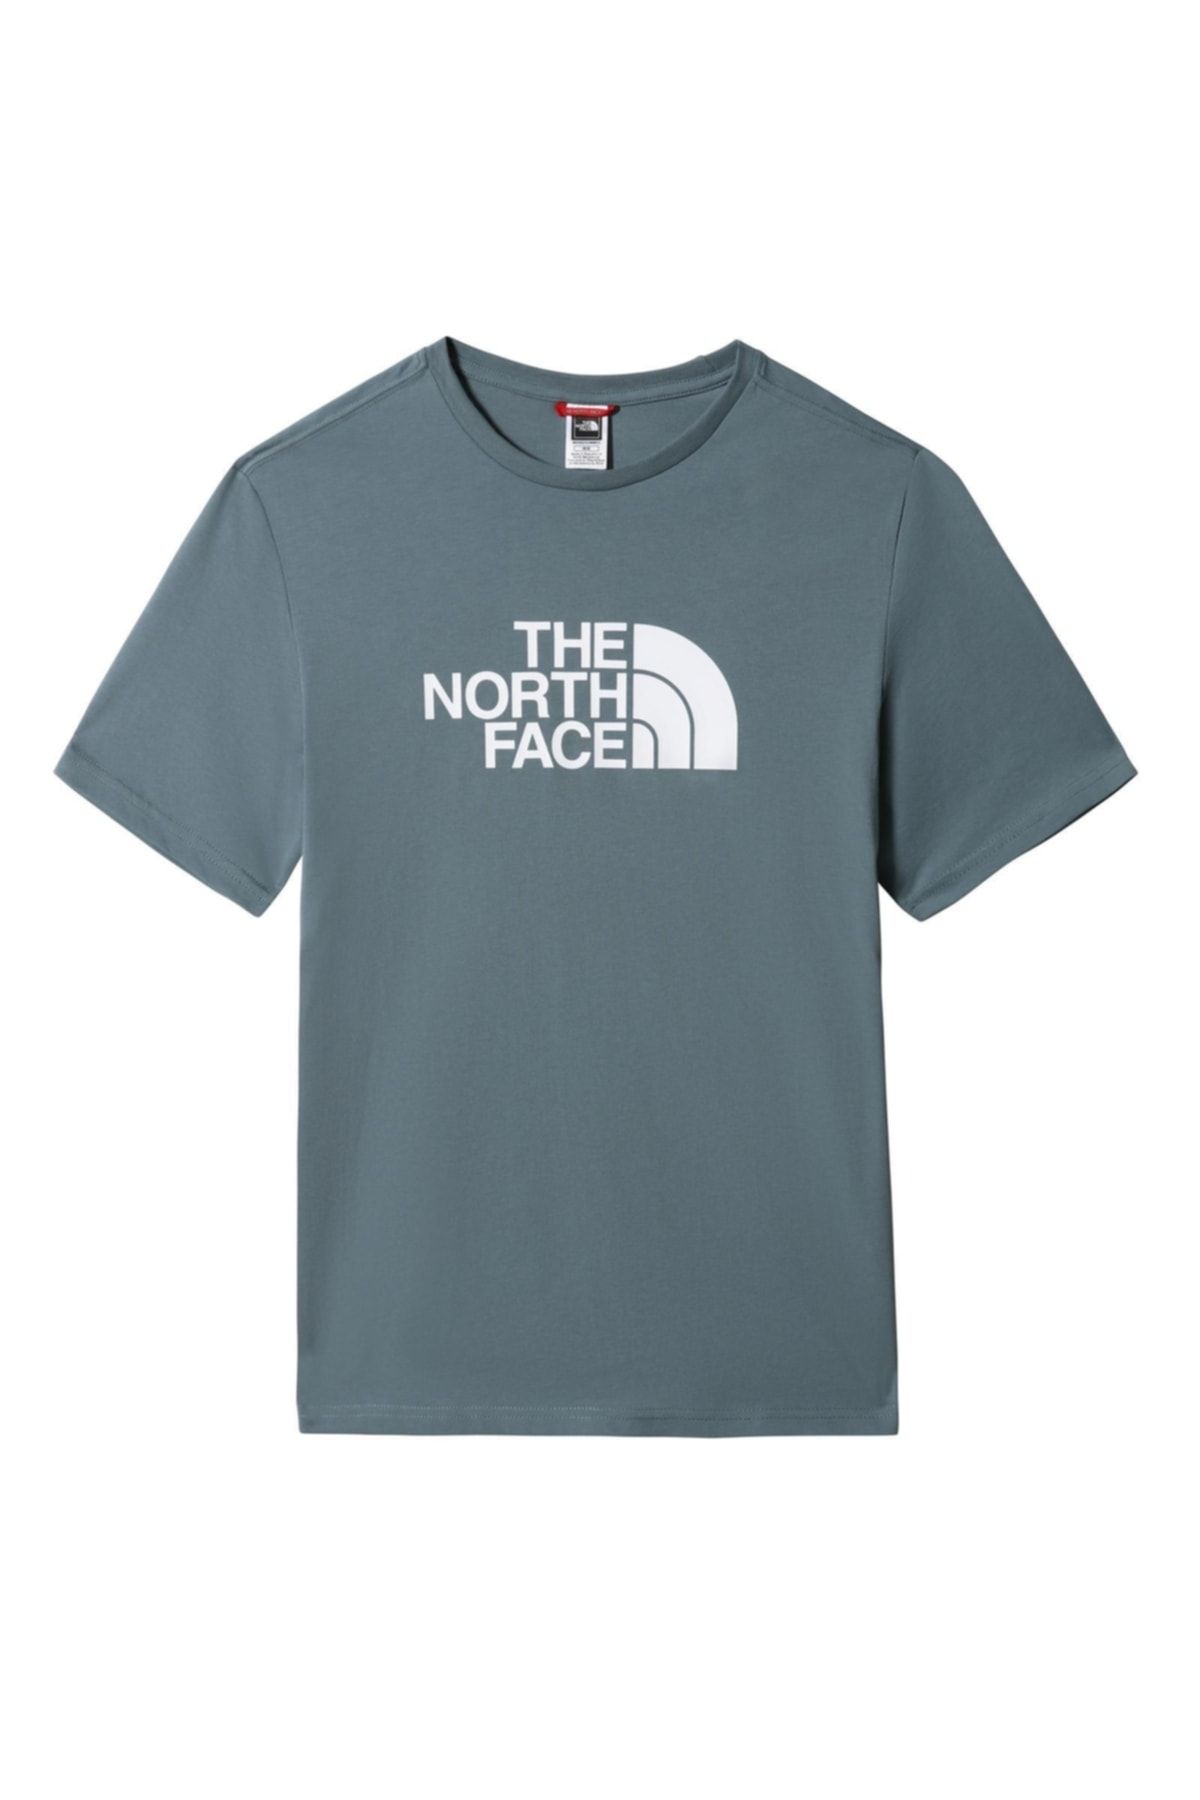 The North Face Easy Tee Erkek T-shirt - Nf0a2tx3a9l